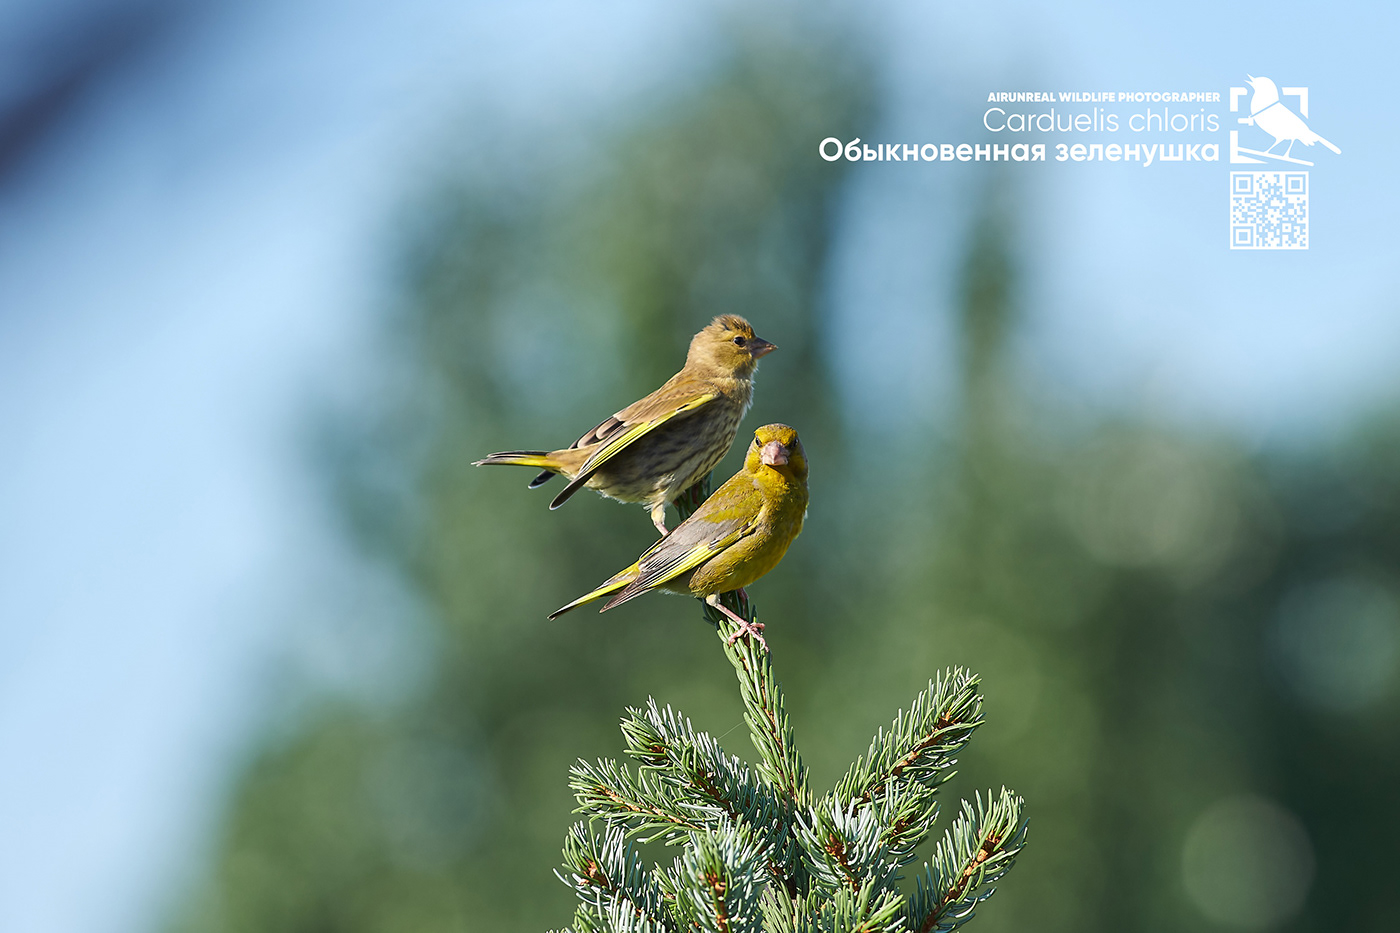 bird birds volgograd Russia wildlife birdswatching Carduelis chloris European greenfinch